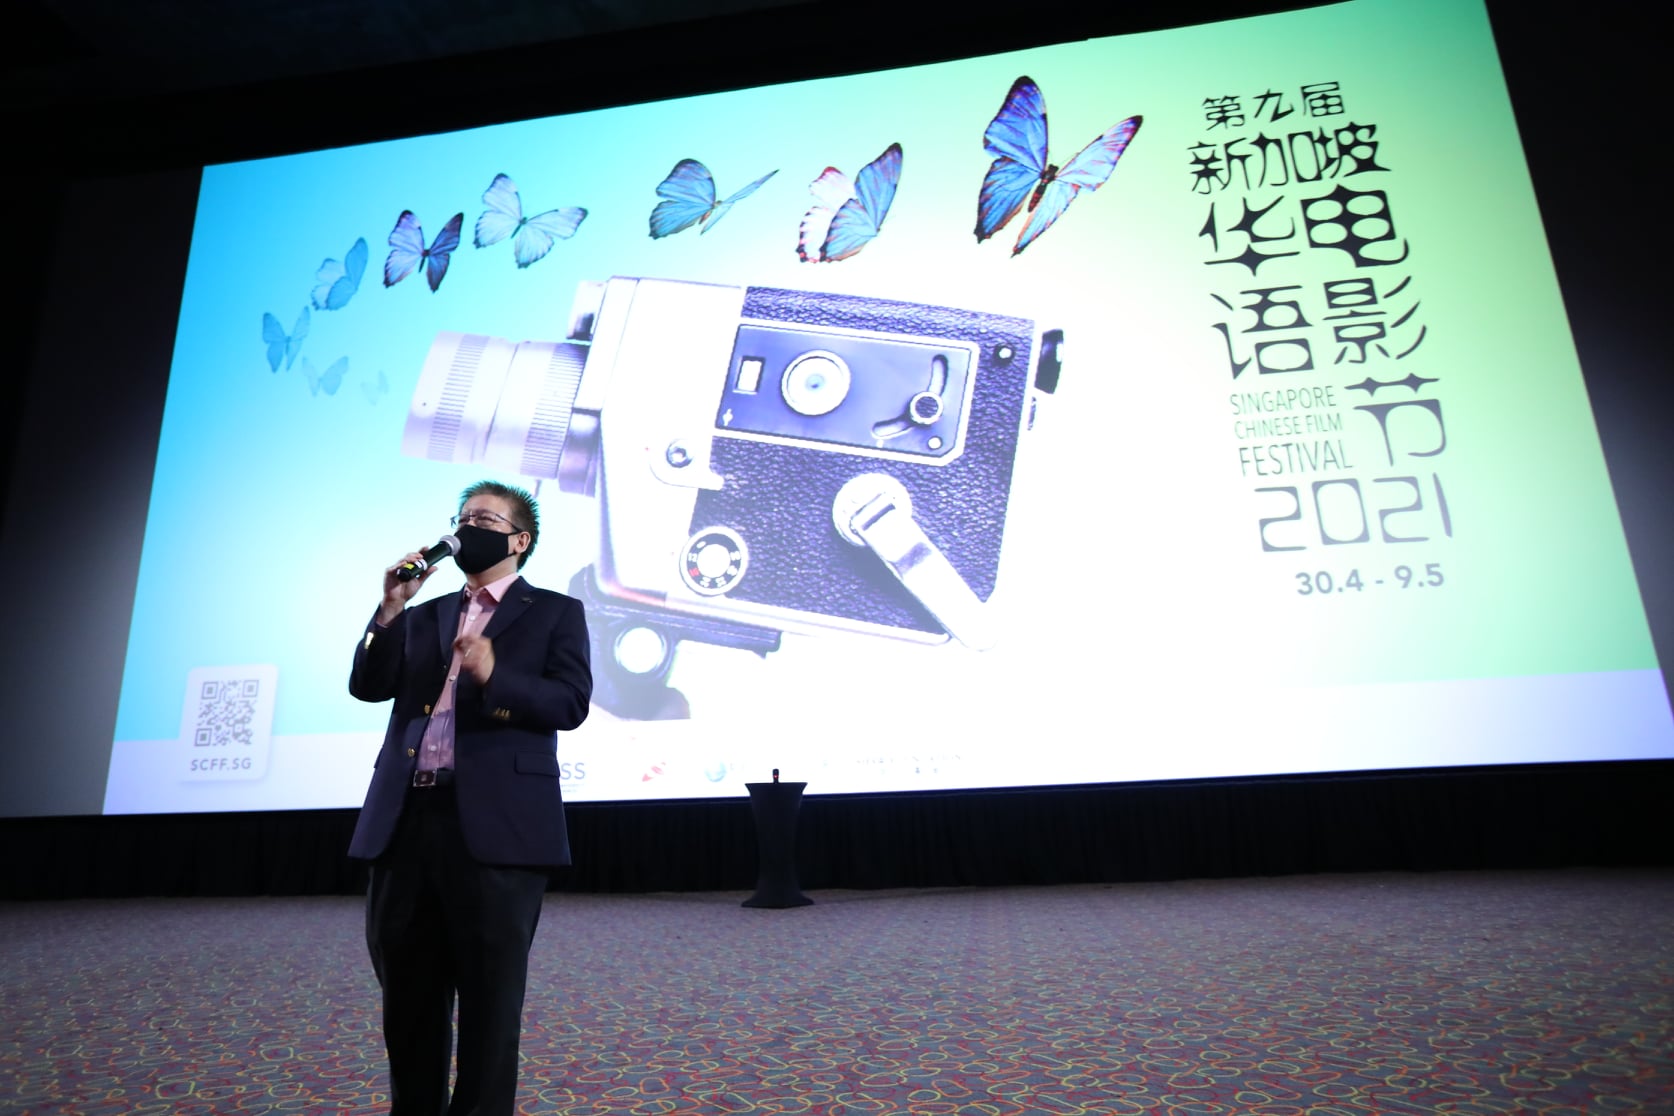 Image courtesy of 2021 Singapore Chinese Film Festival. 